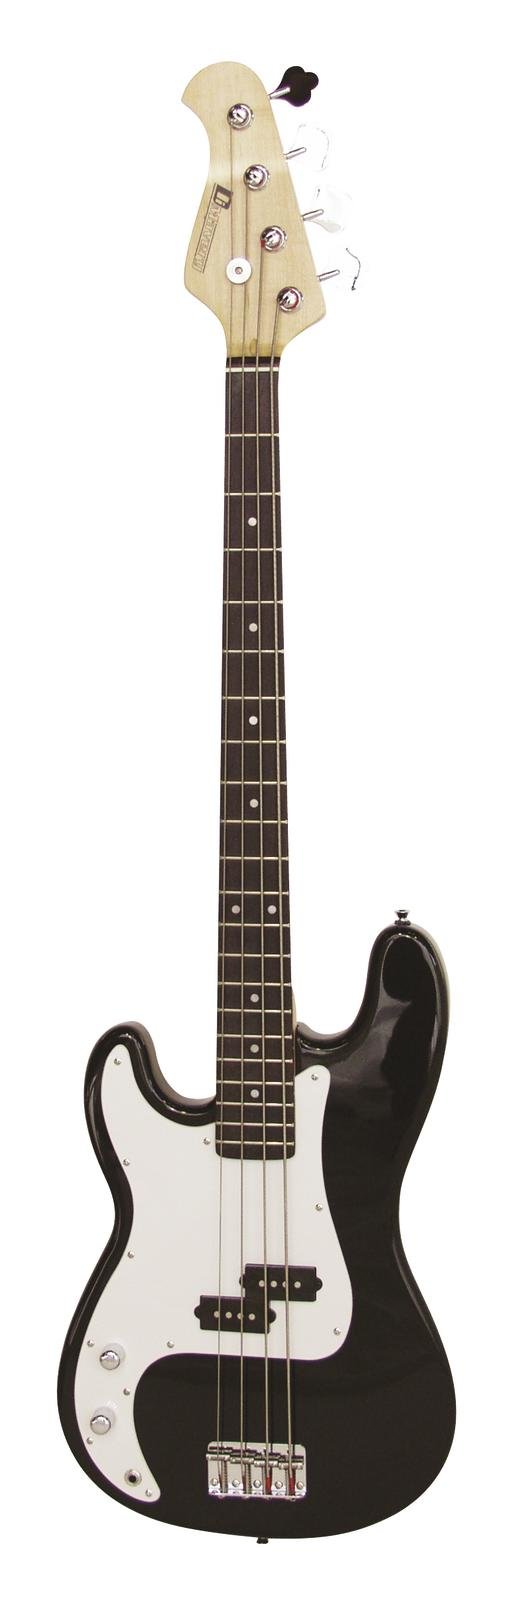 Dimavery PB-320 elektrická baskytara LH, černý